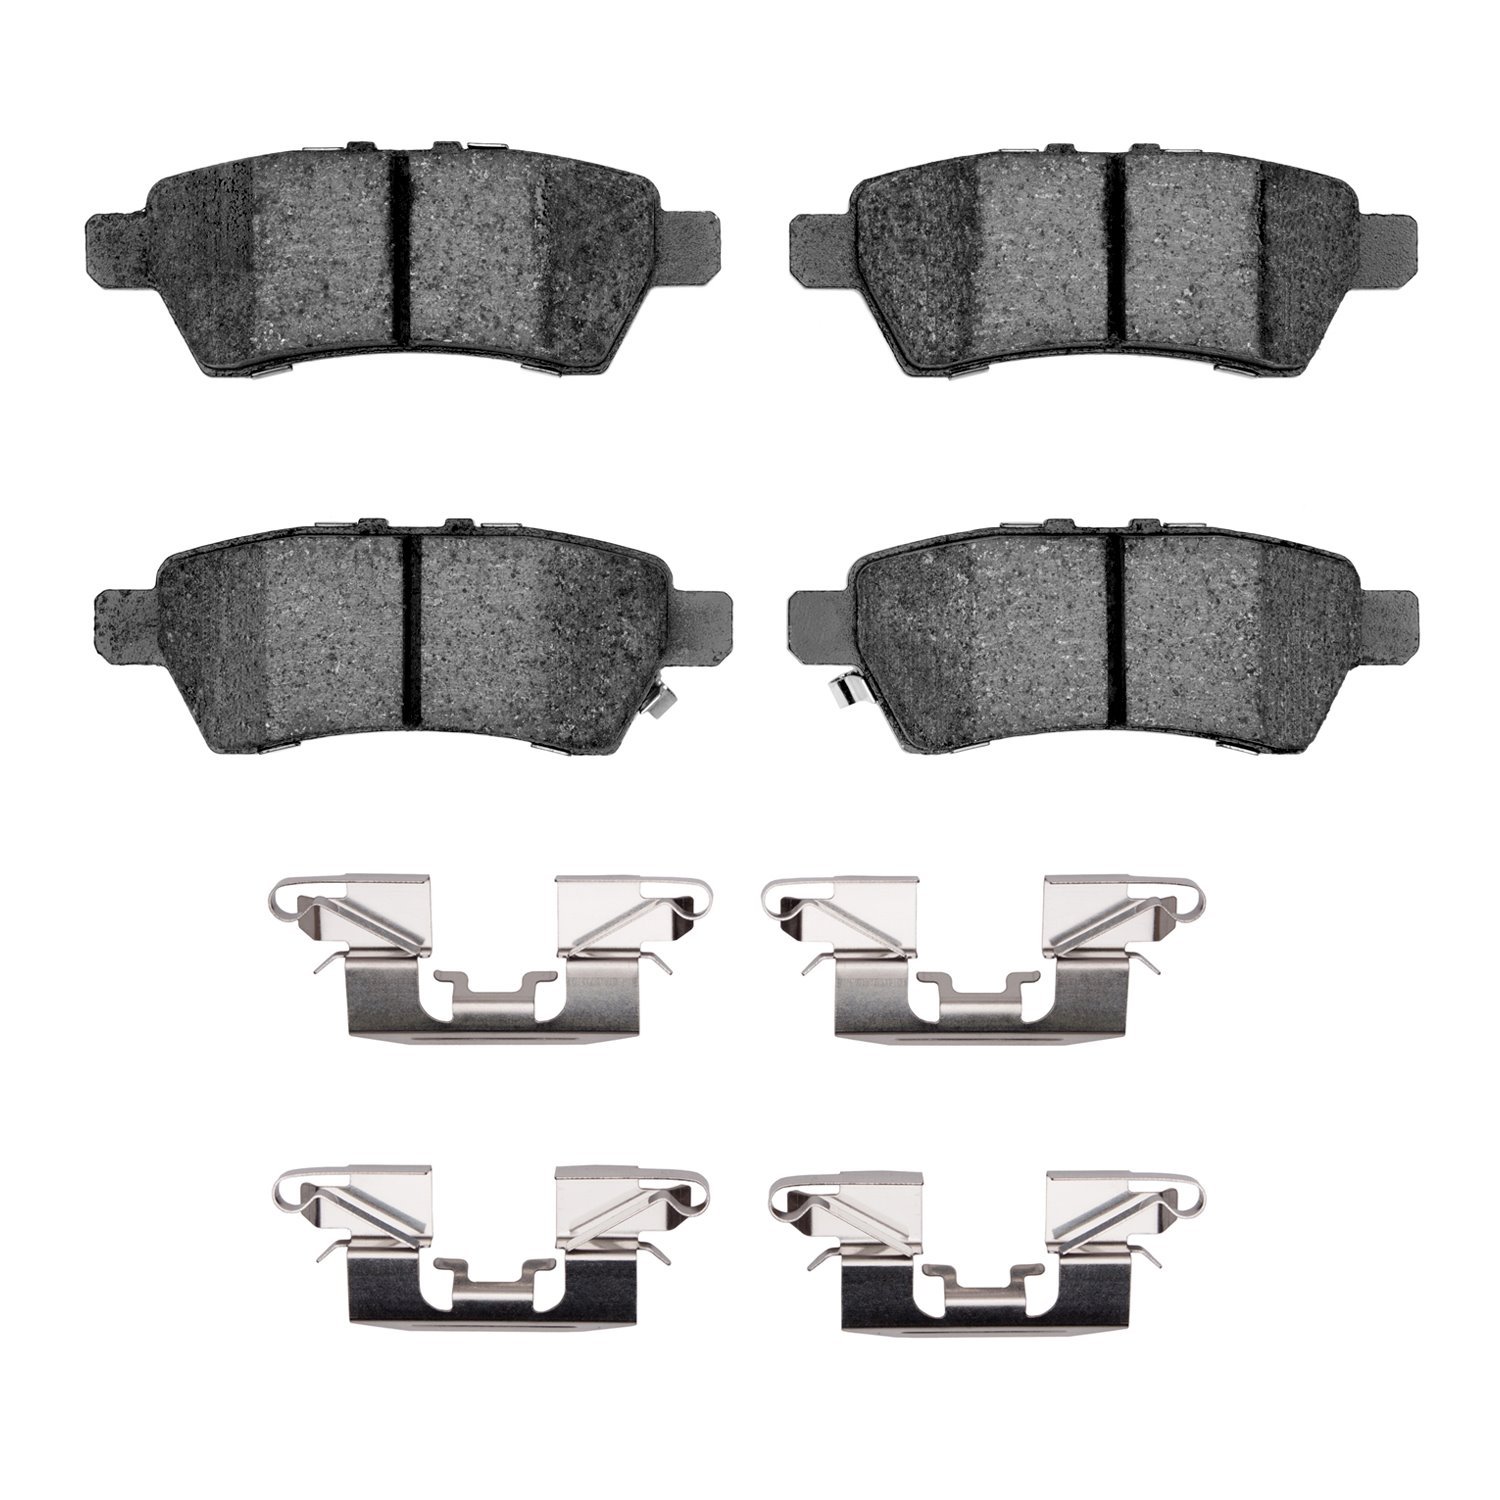 1310-1101-01 3000-Series Ceramic Brake Pads & Hardware Kit, 2005-2012 Infiniti/Nissan, Position: Rear